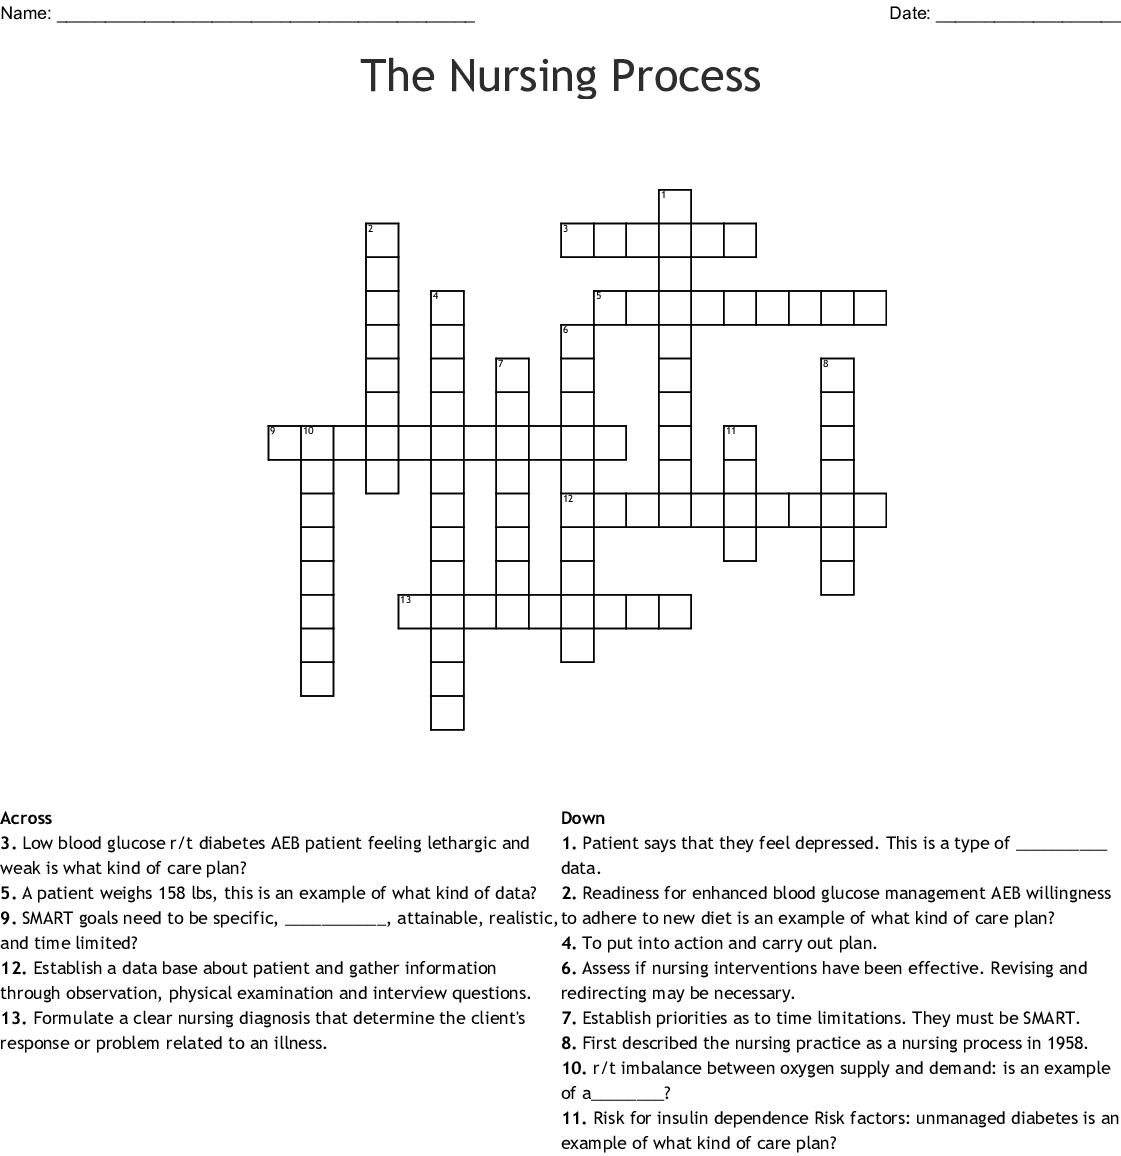 Nursing Crossword Puzzle Worksheet | Printable Worksheets